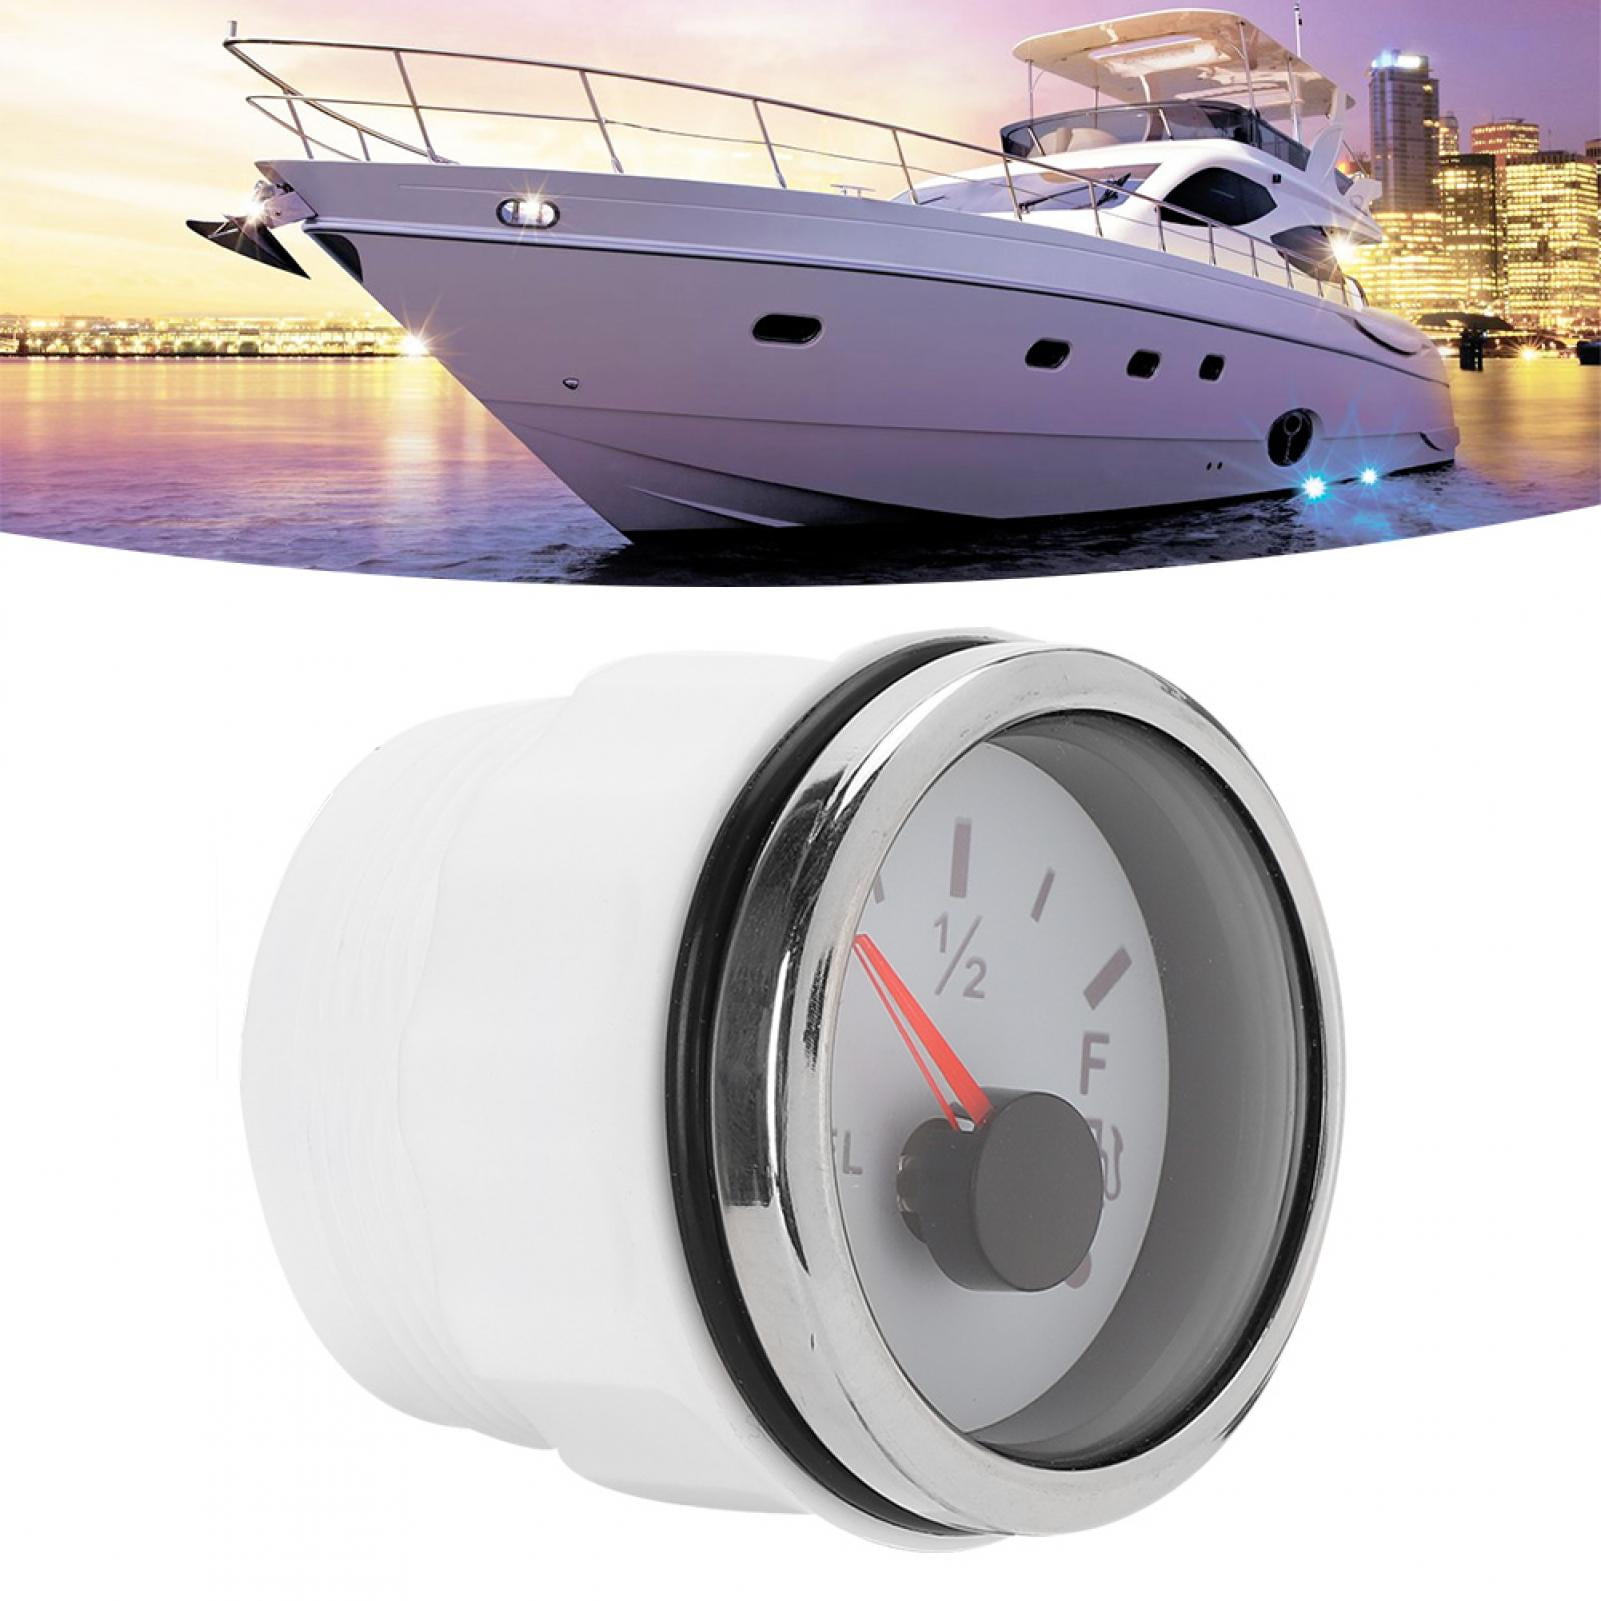 Fuel Level Gauge American Standards Black 2in Fuel Level Meter LED Digital Display Smart Red Light Alarm for Marine Boat Car